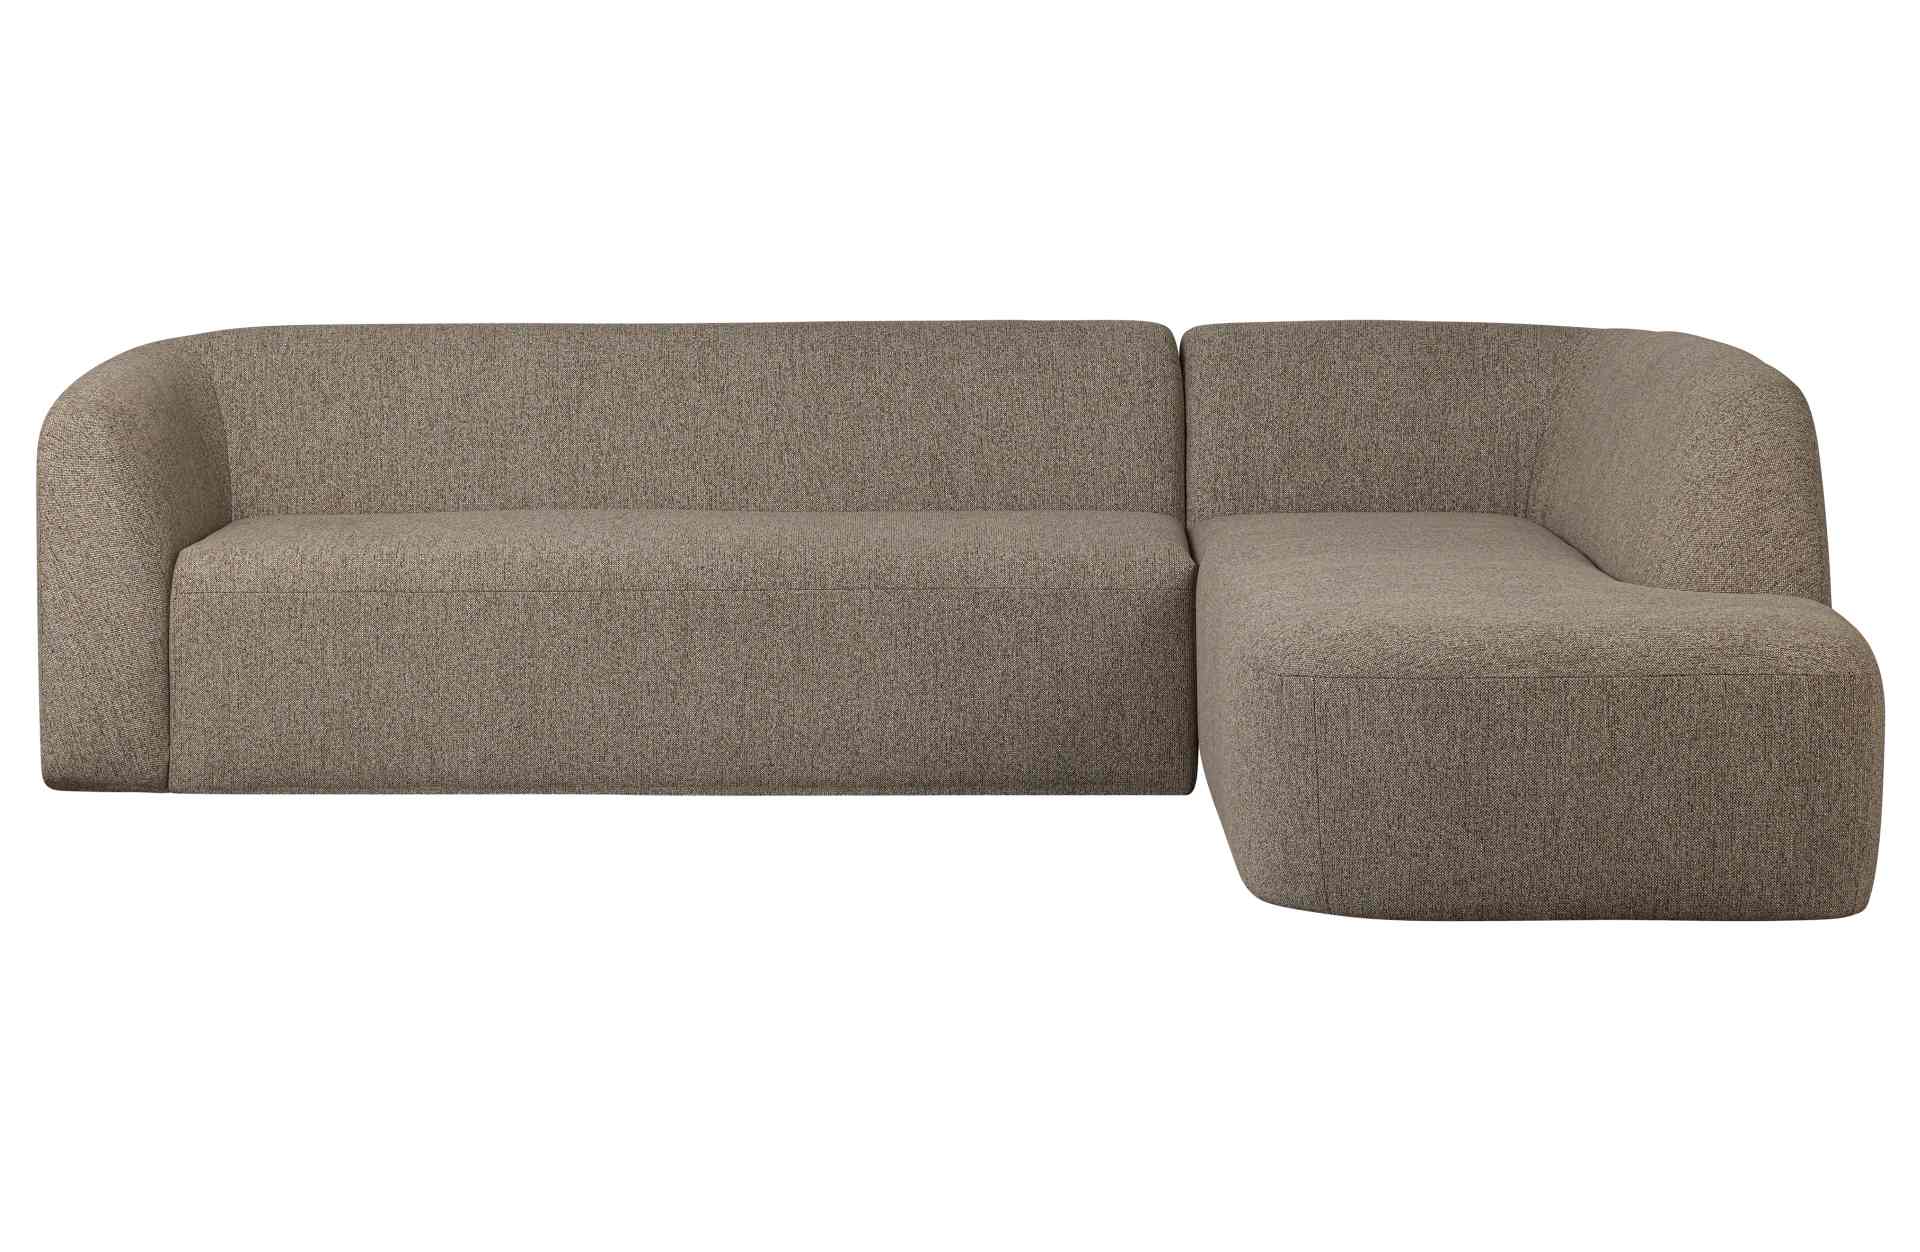 Das Ecksofa Sloping wurde aus bequemen Stoff gefertigt, welcher einen Braunen Farbton besitzt. Das Sofa ist ein echter Hingucker für dein Zuhause, denn es hat ein modernes Design, welches zu jeder Inneneinrichtung passt.